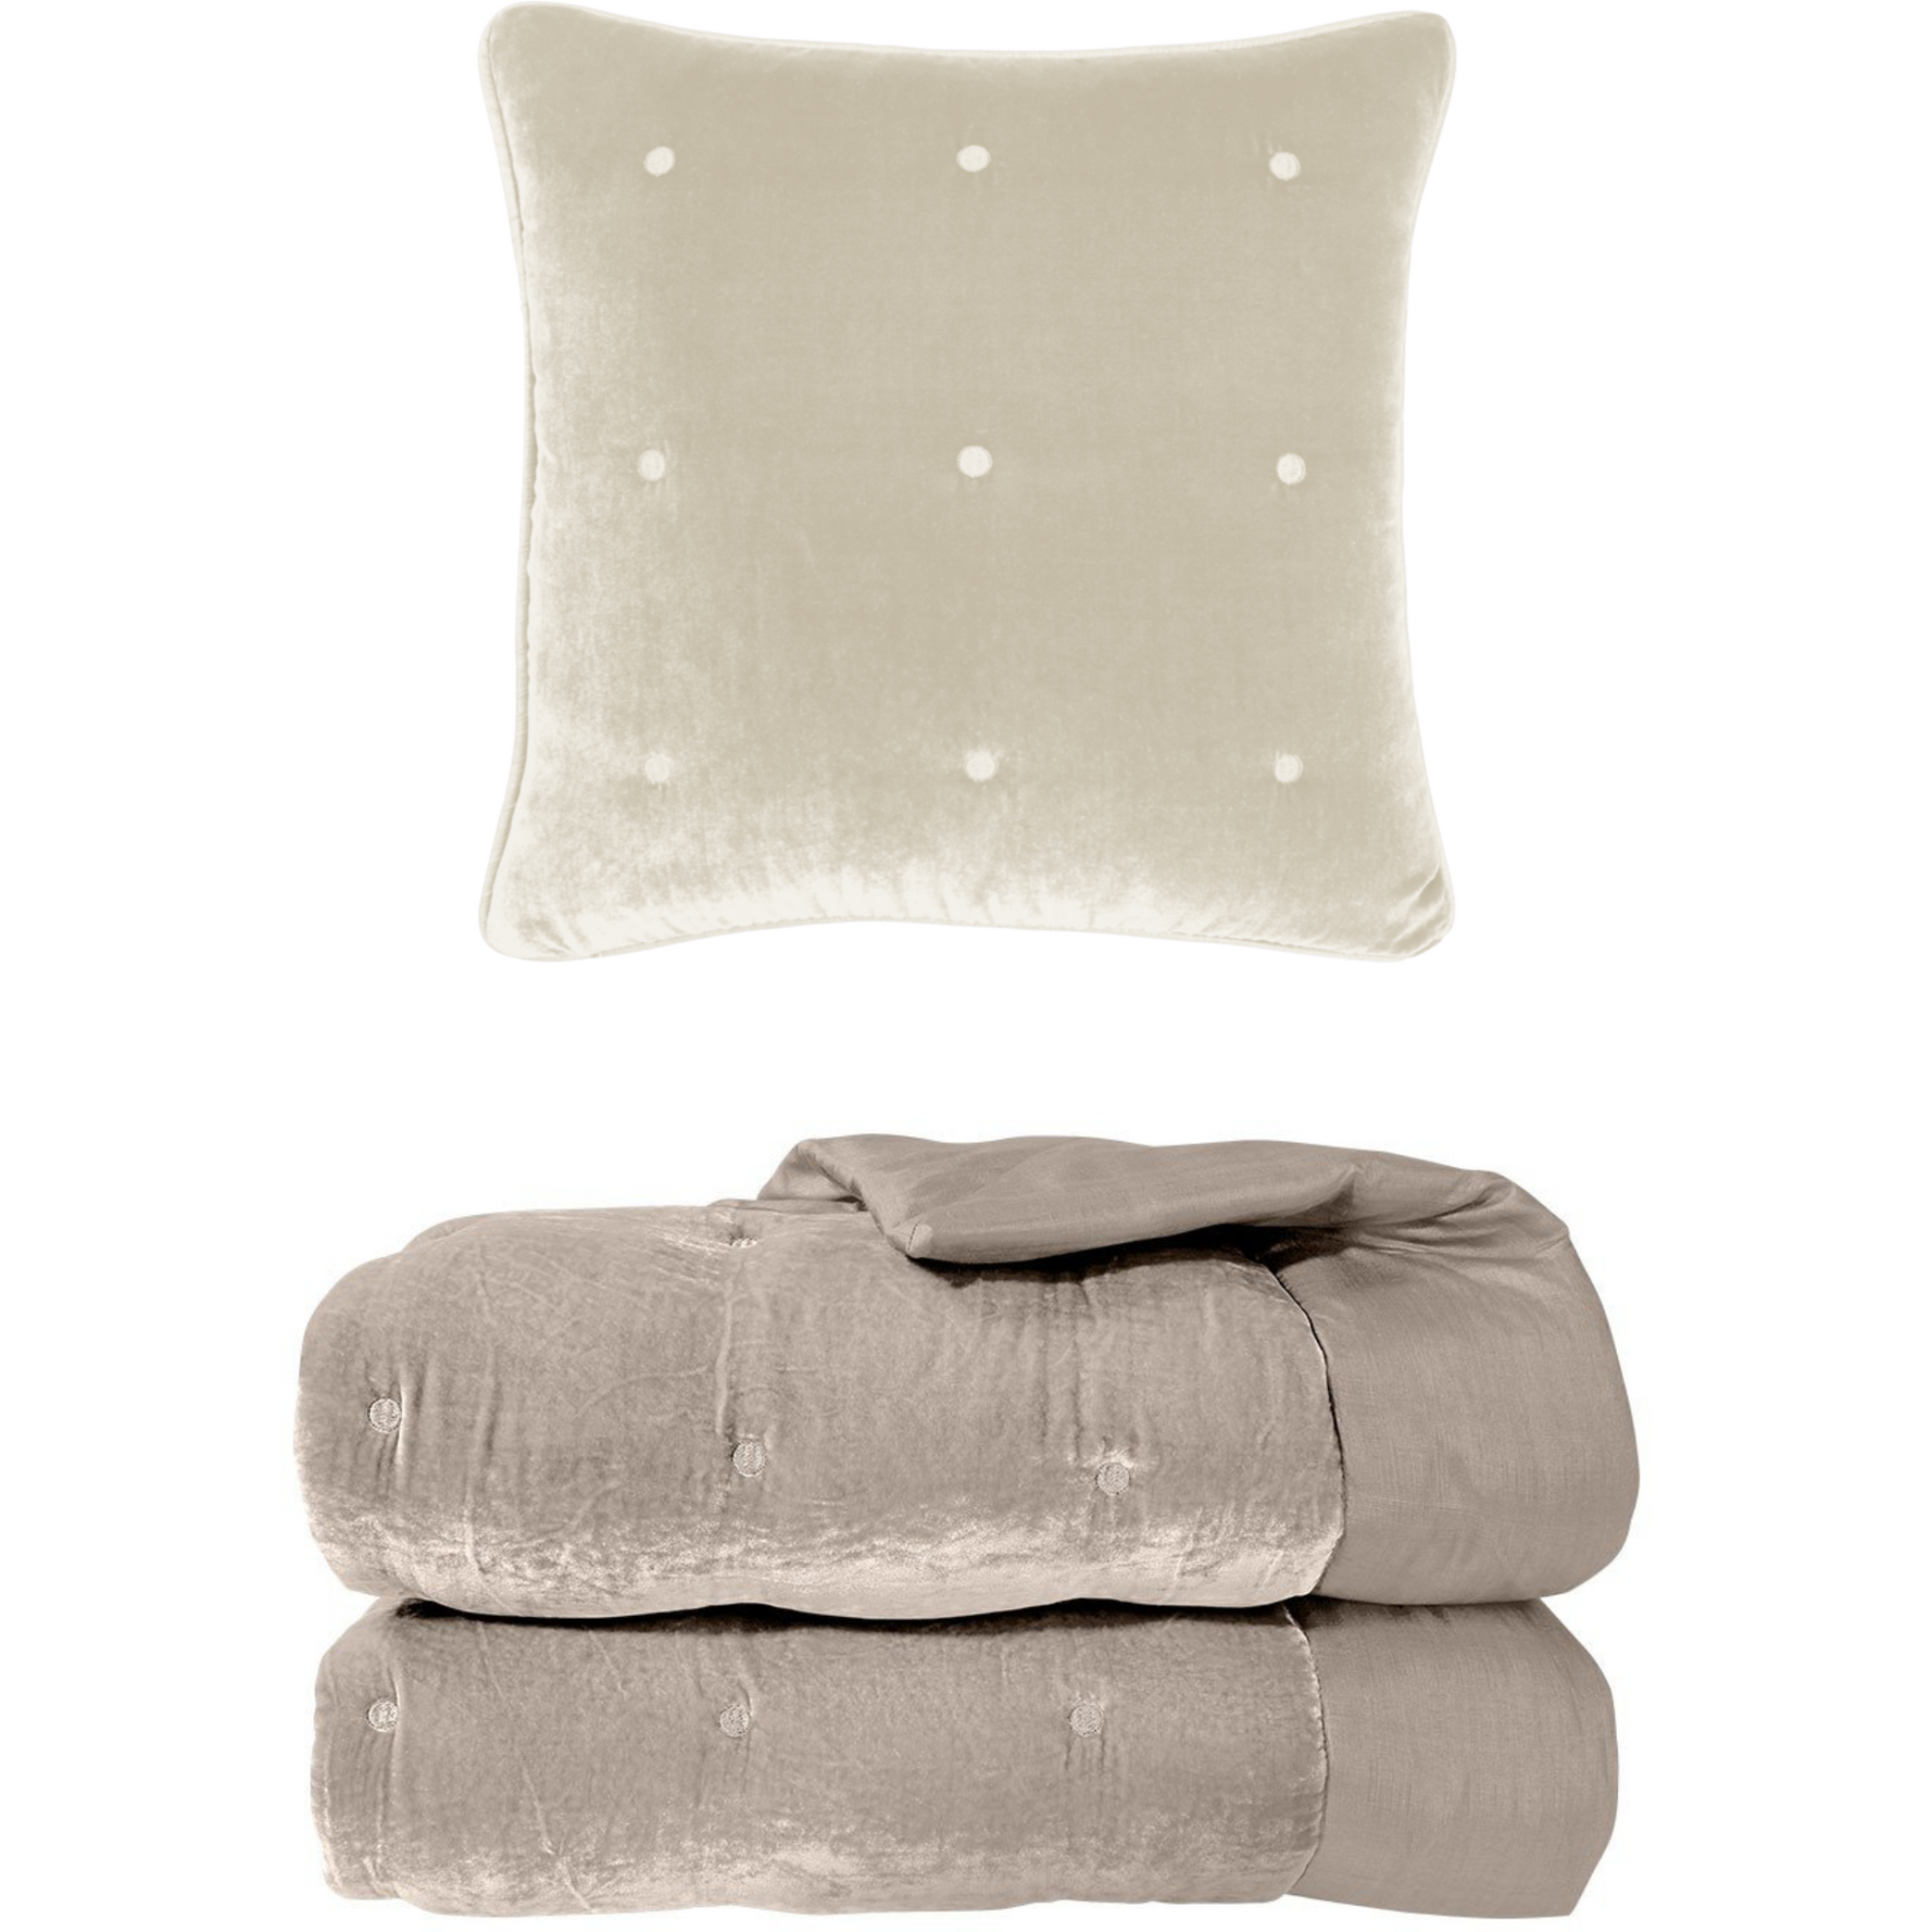 Yves Delorme Cocon Counterpane and Decorative Pillow Main Pierre Fine Linens